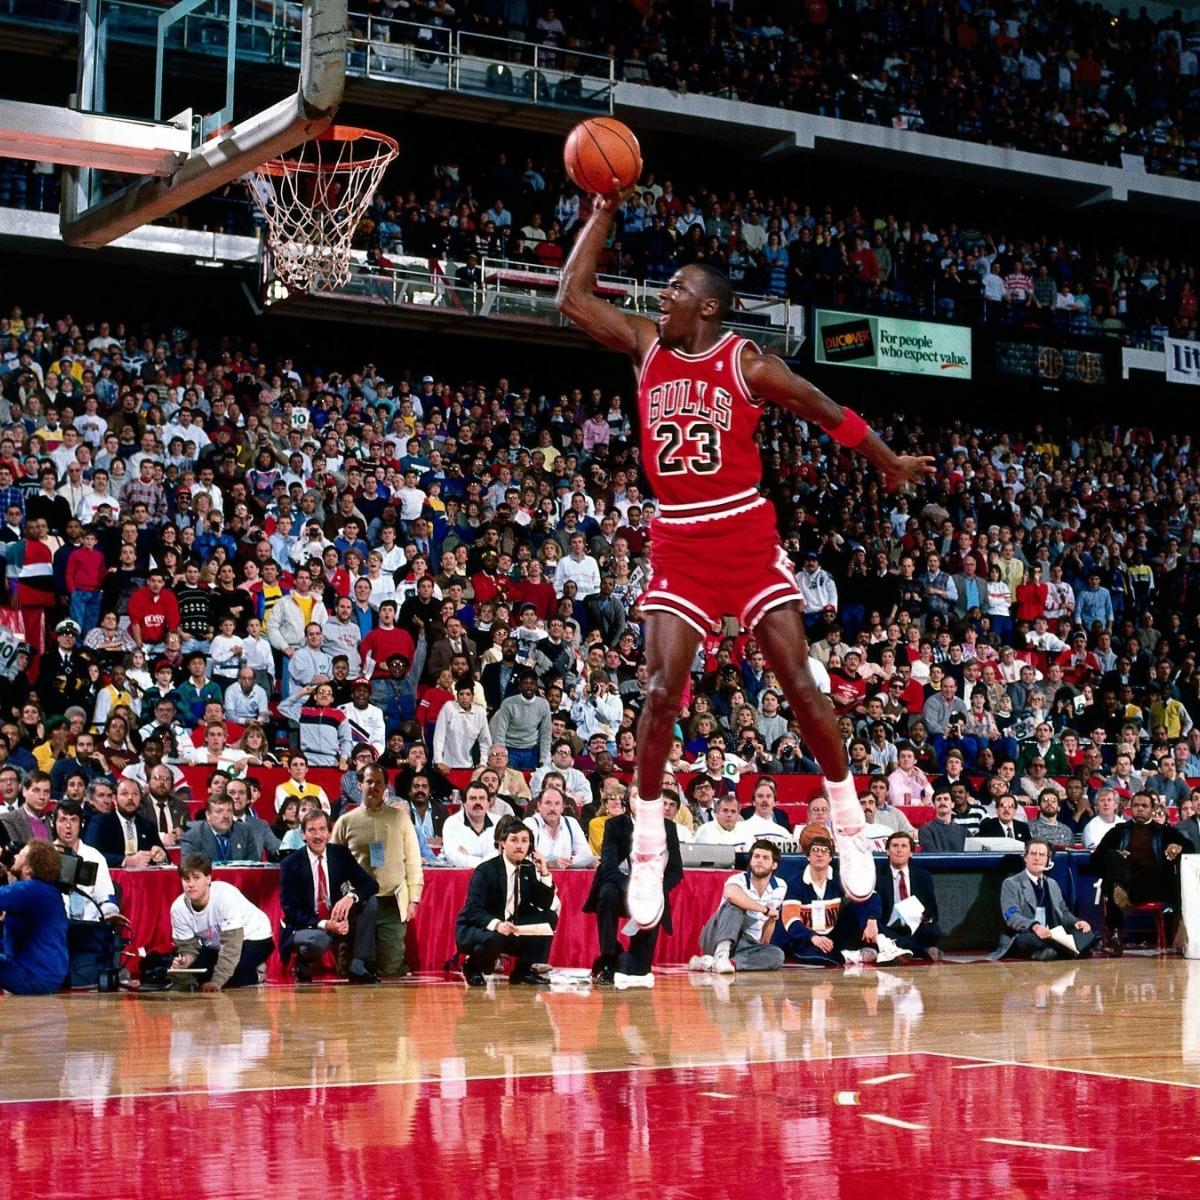 Michael Jordan Warned Hawks in Locker Room Before Dropping 61 Points